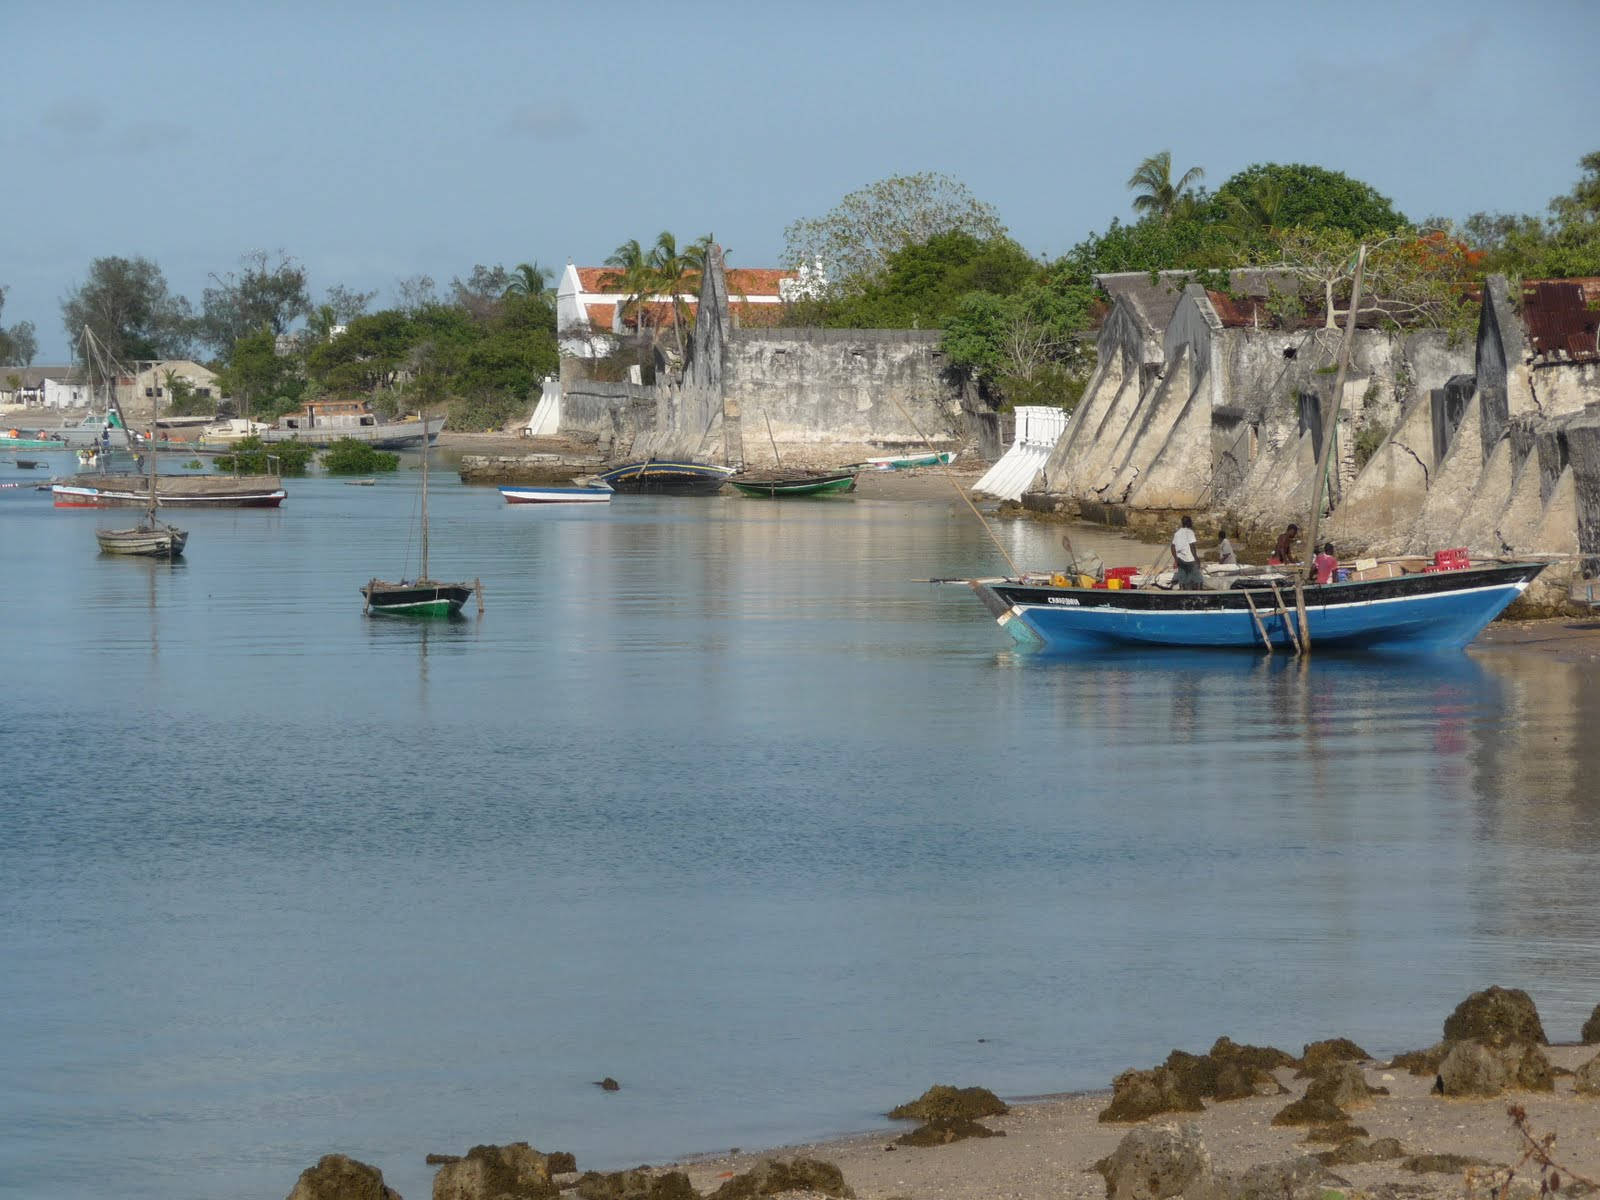 Mozambiqueisland Harbor: Mozambique-ön Hamn Wallpaper